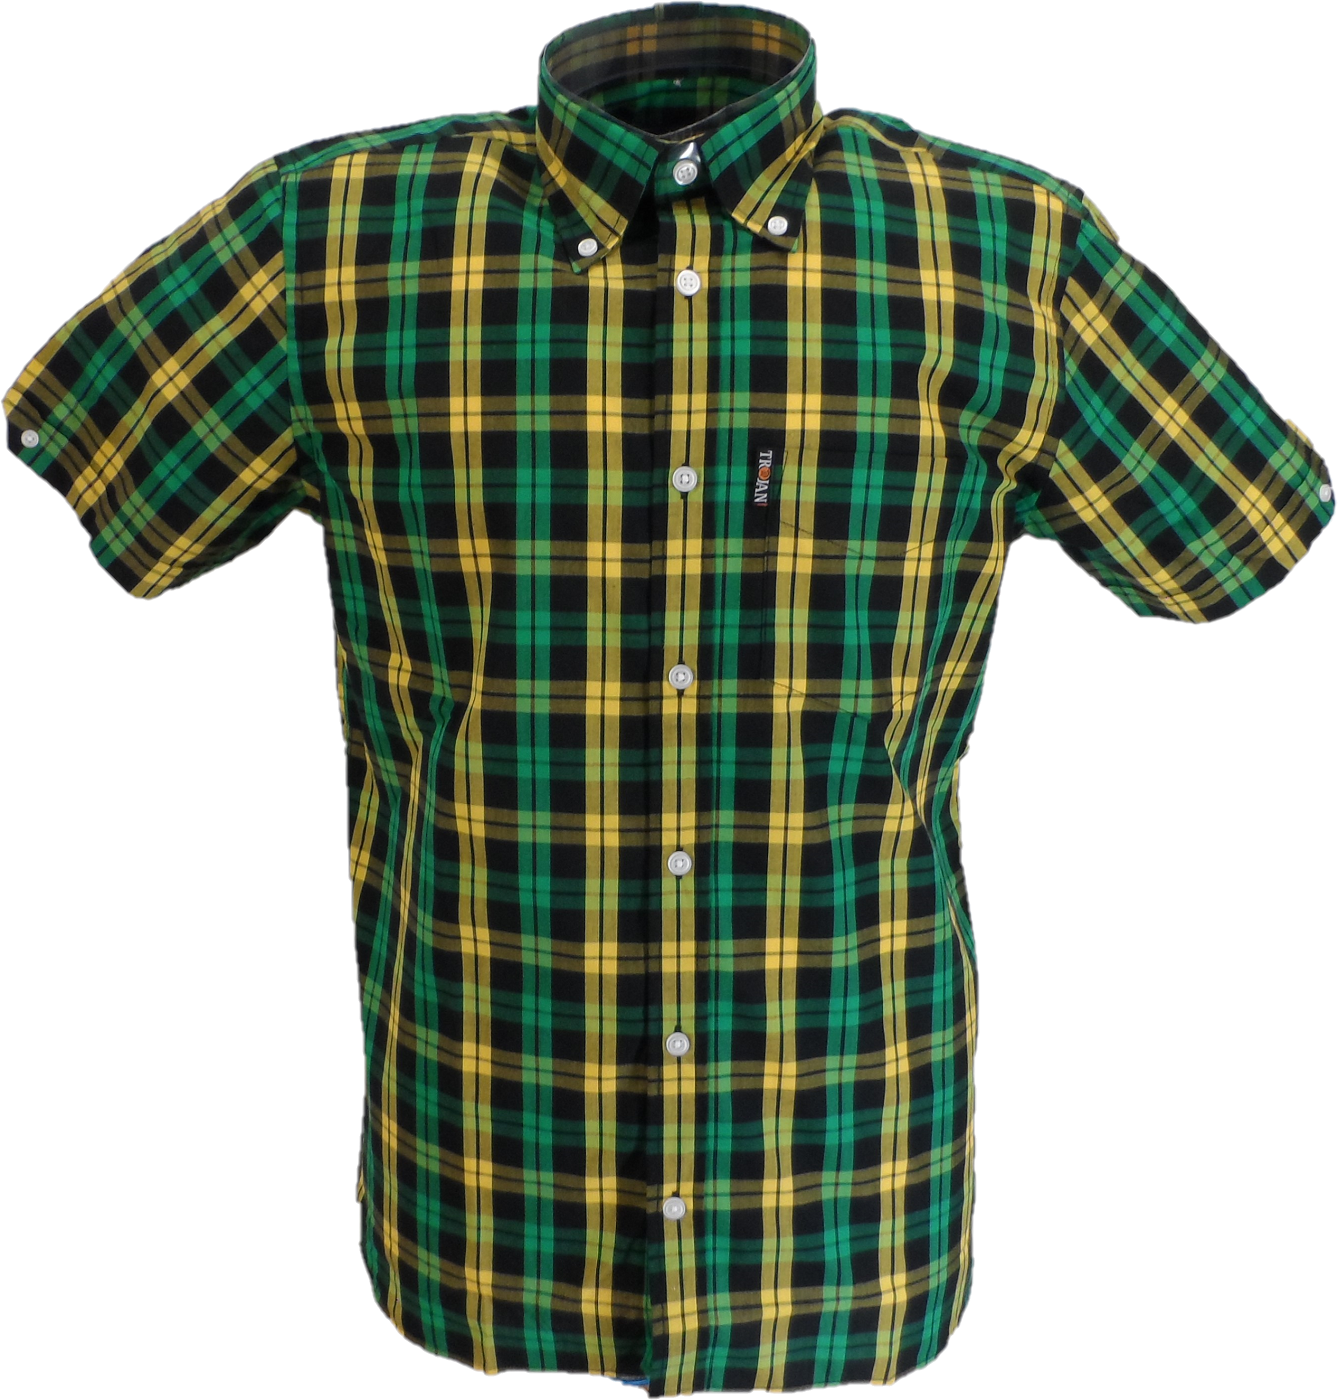 قمصان Trojan رجالي باللون الأسود/الأخضر/الذهبي بأكمام قصيرة ومربع جيب